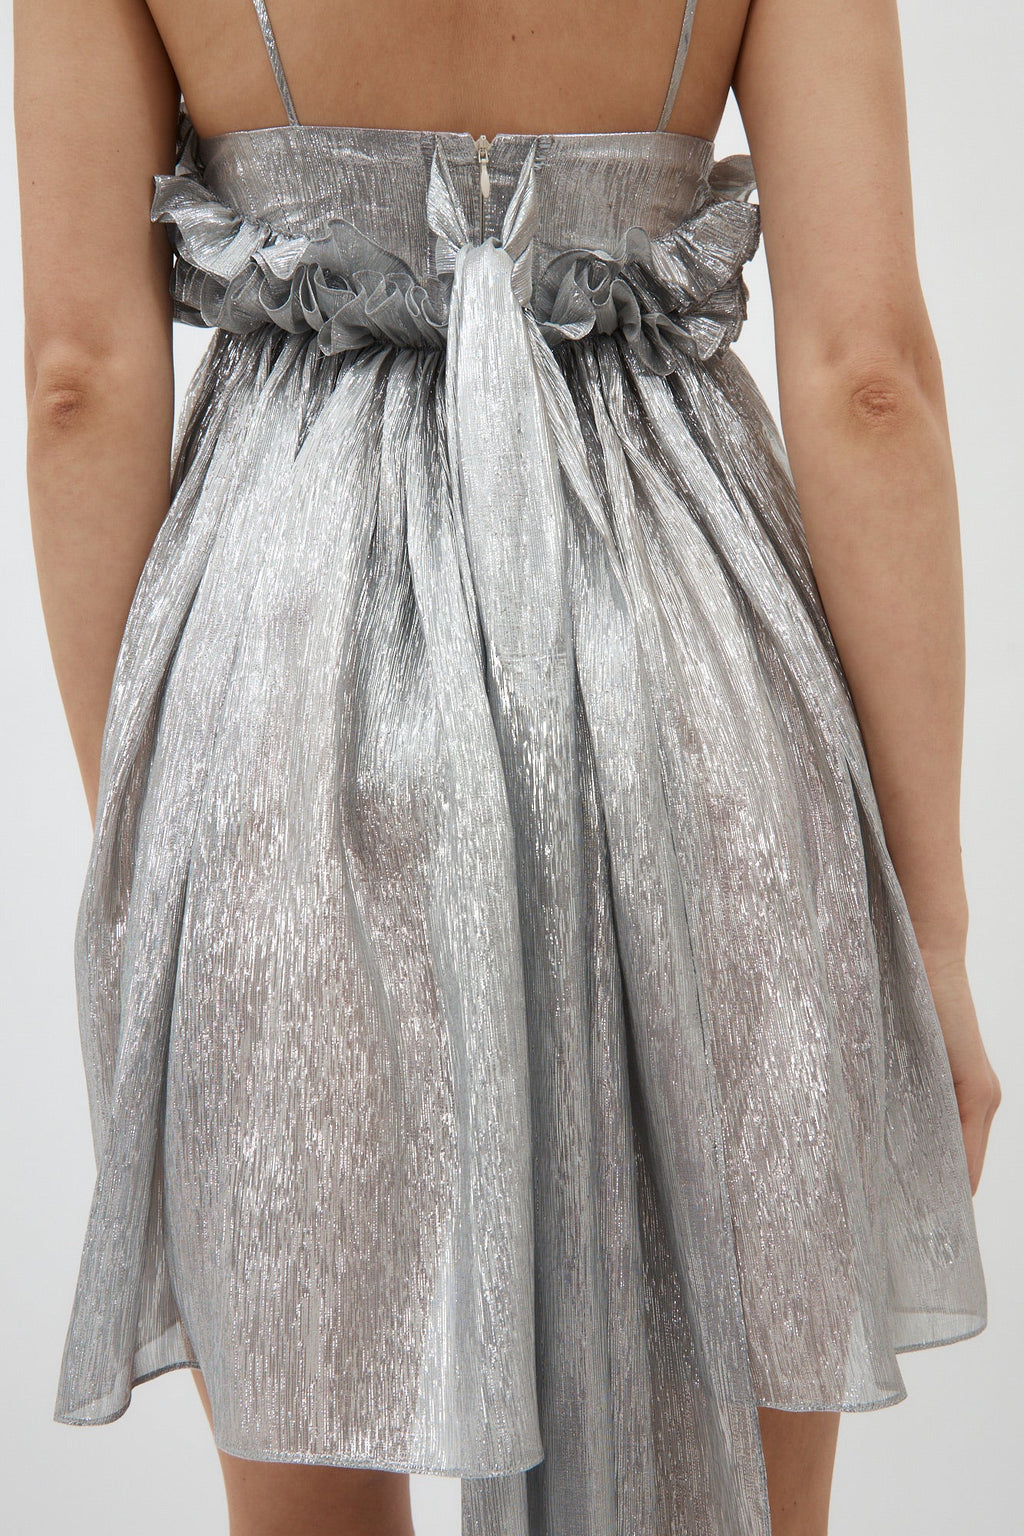 Ari Silver Mini Dress